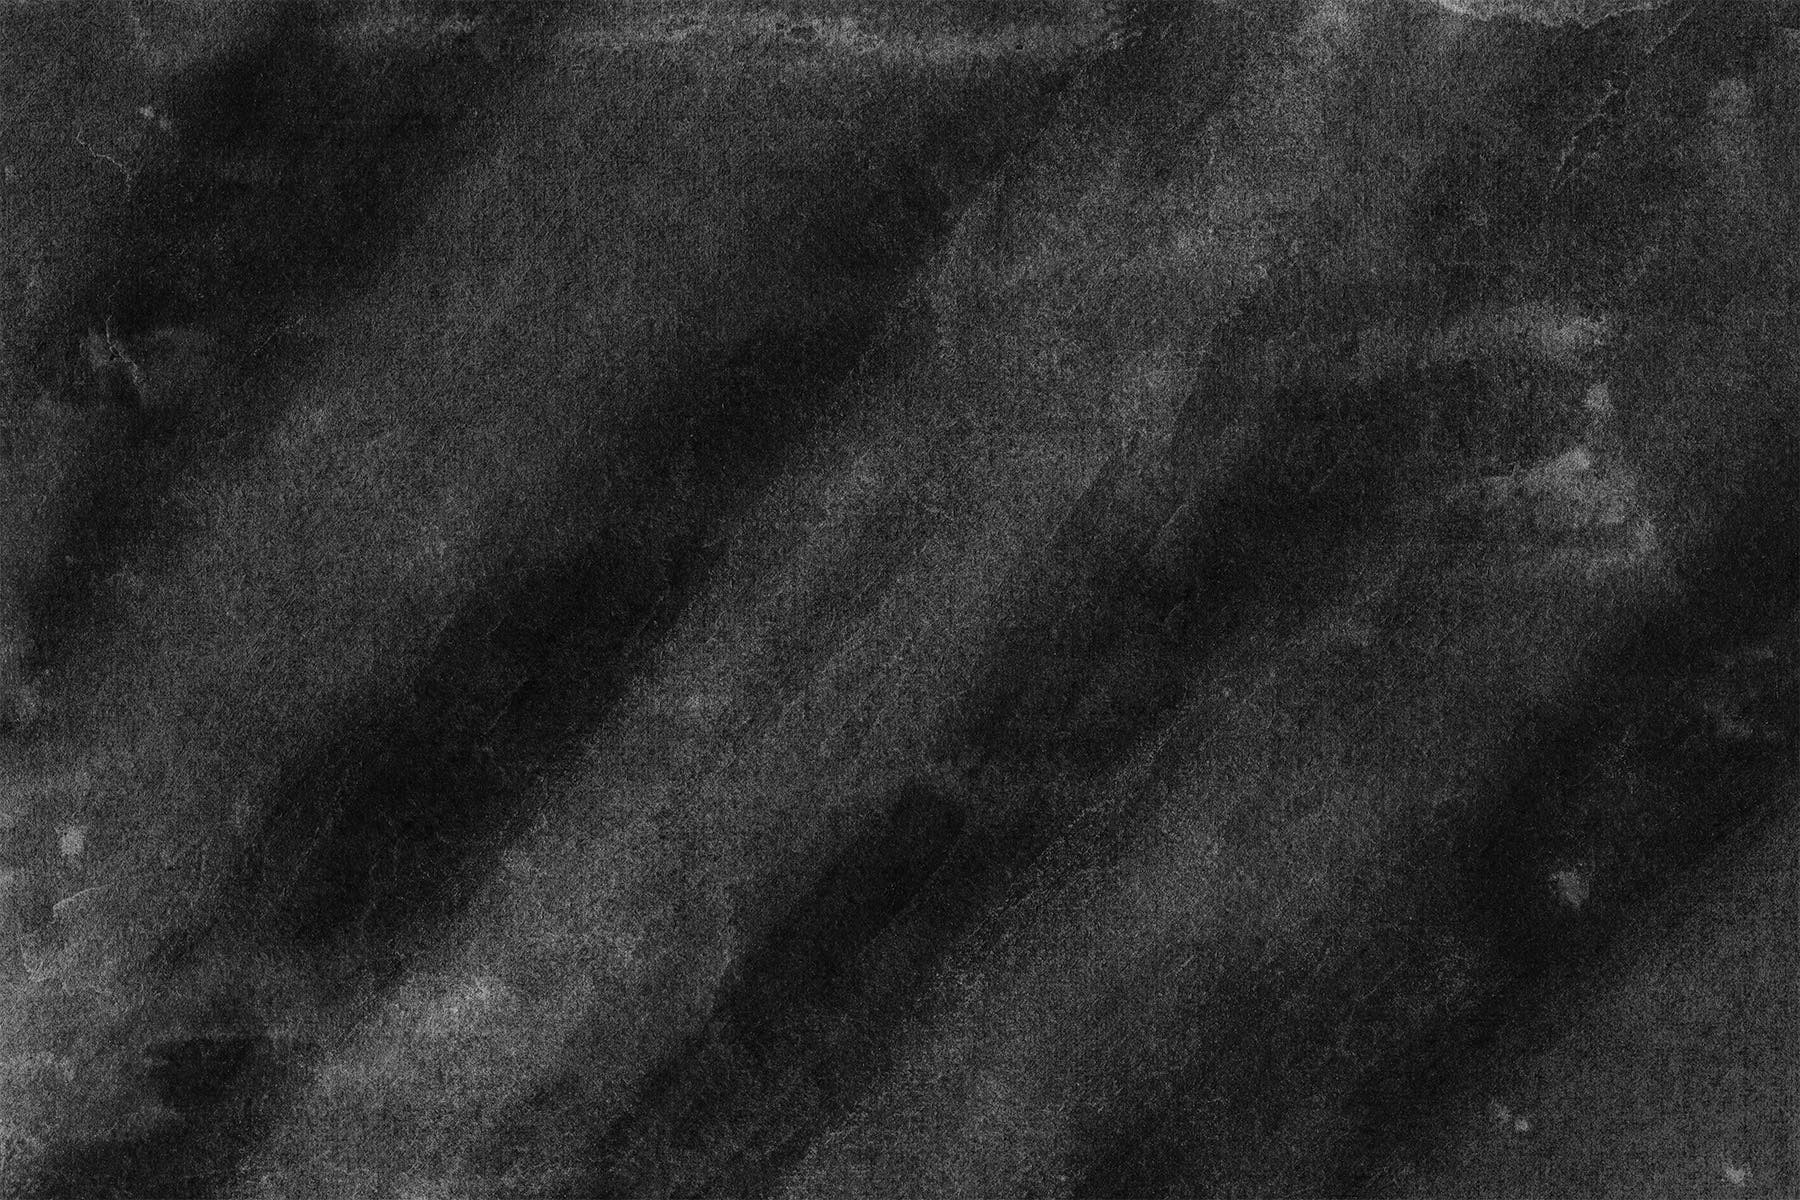 黑色墨水肌理纹理高清背景图片素材 Noir Backgrounds插图(2)